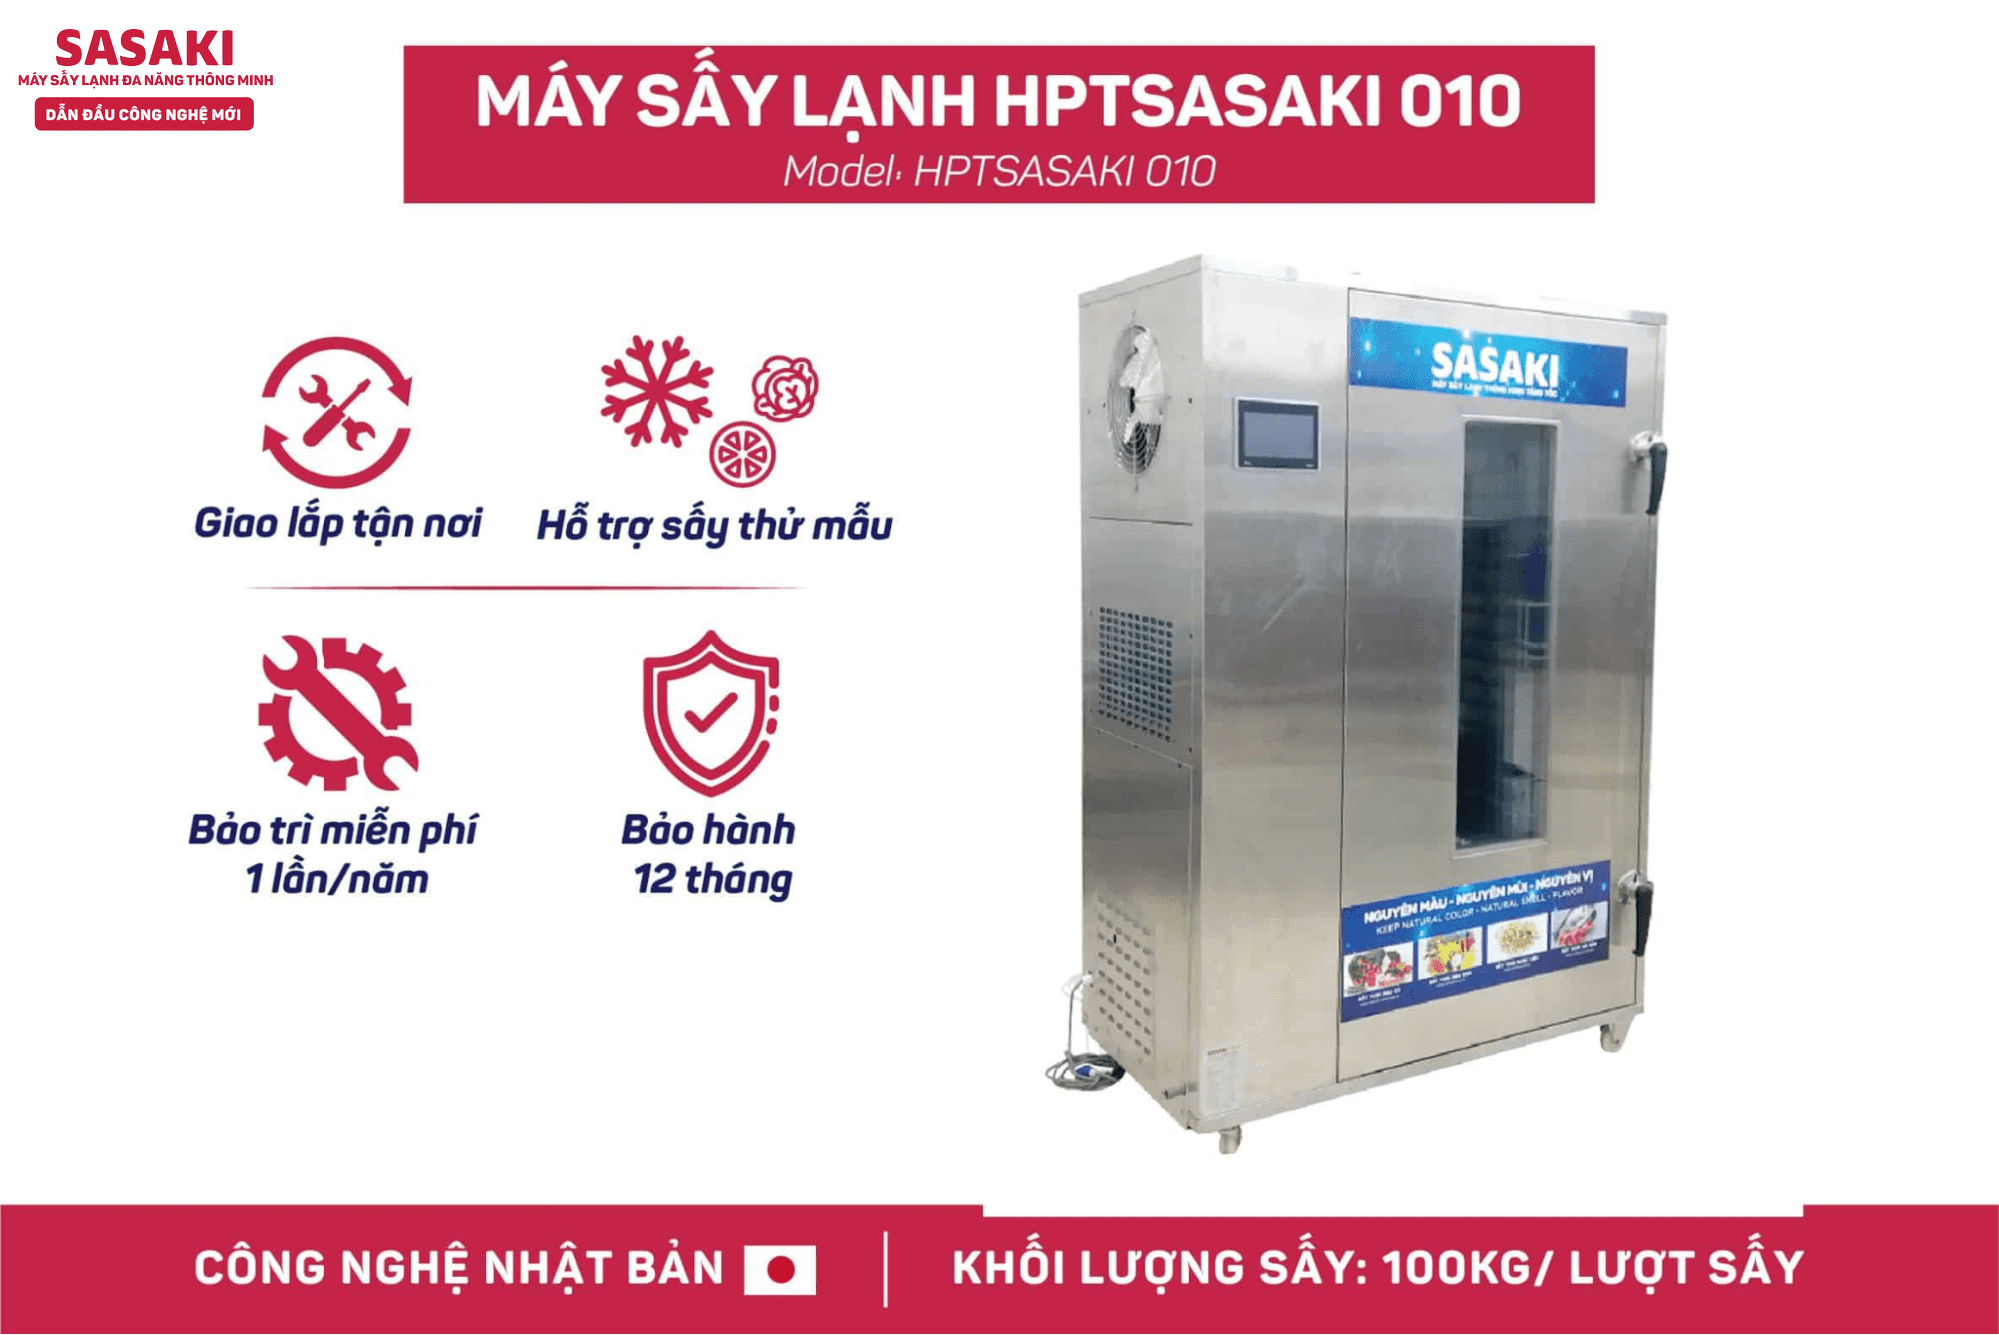 Máy sấy lạnh thông minh SASAKI luôn đạt chuẩn về chất lượng và an toàn cấp quốc gia và quốc tế